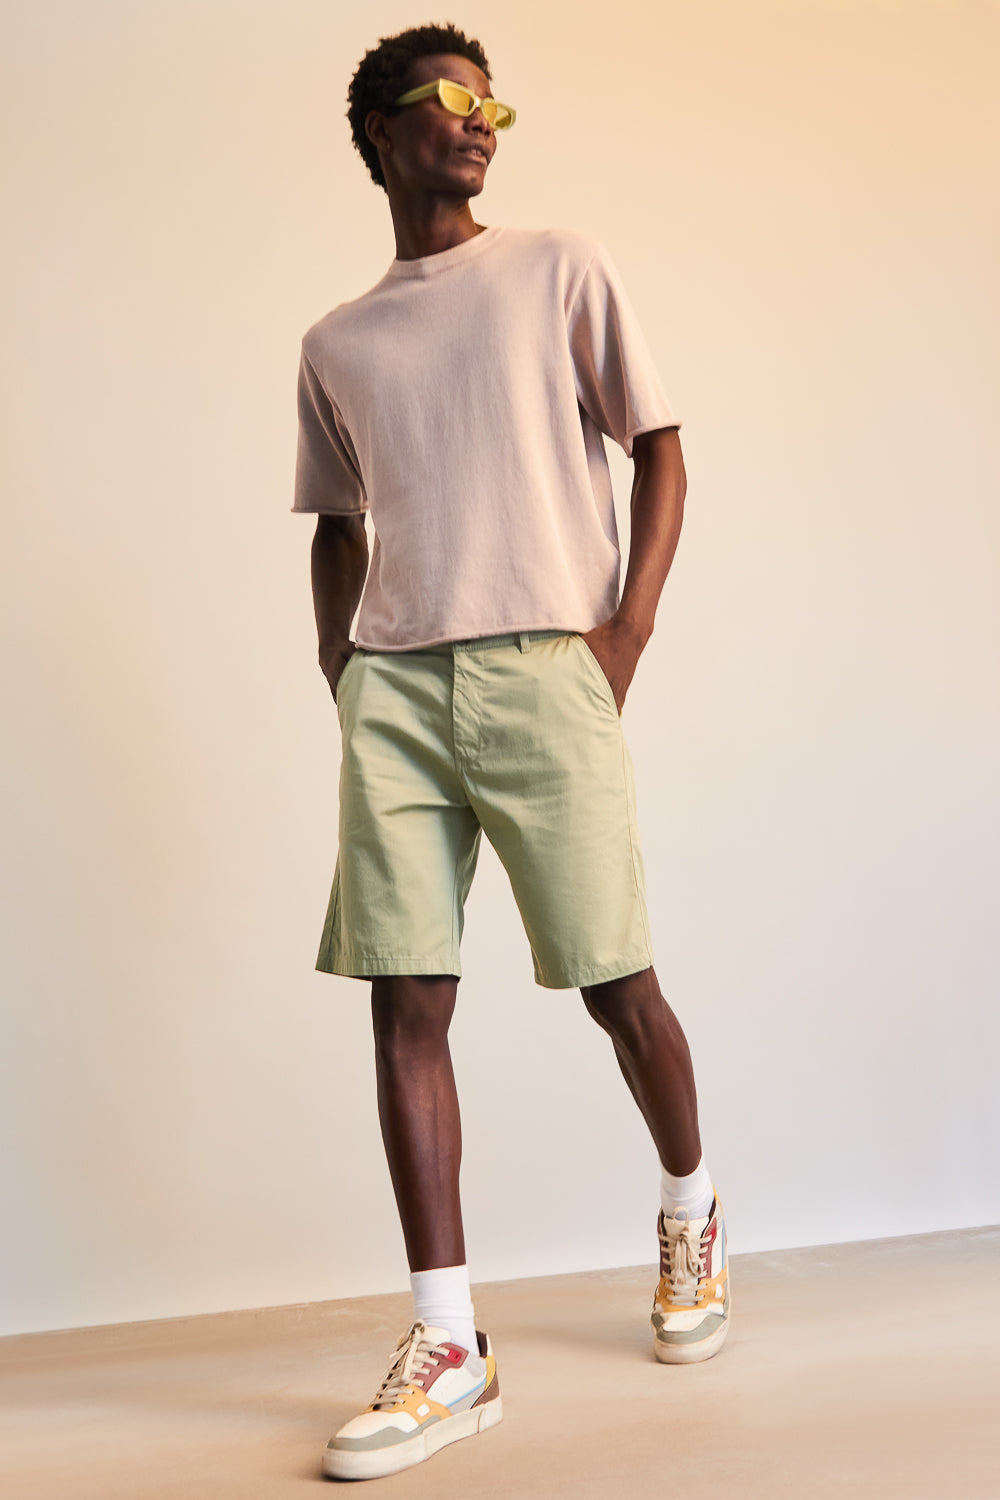 Men's Mint Green Summer Shorts